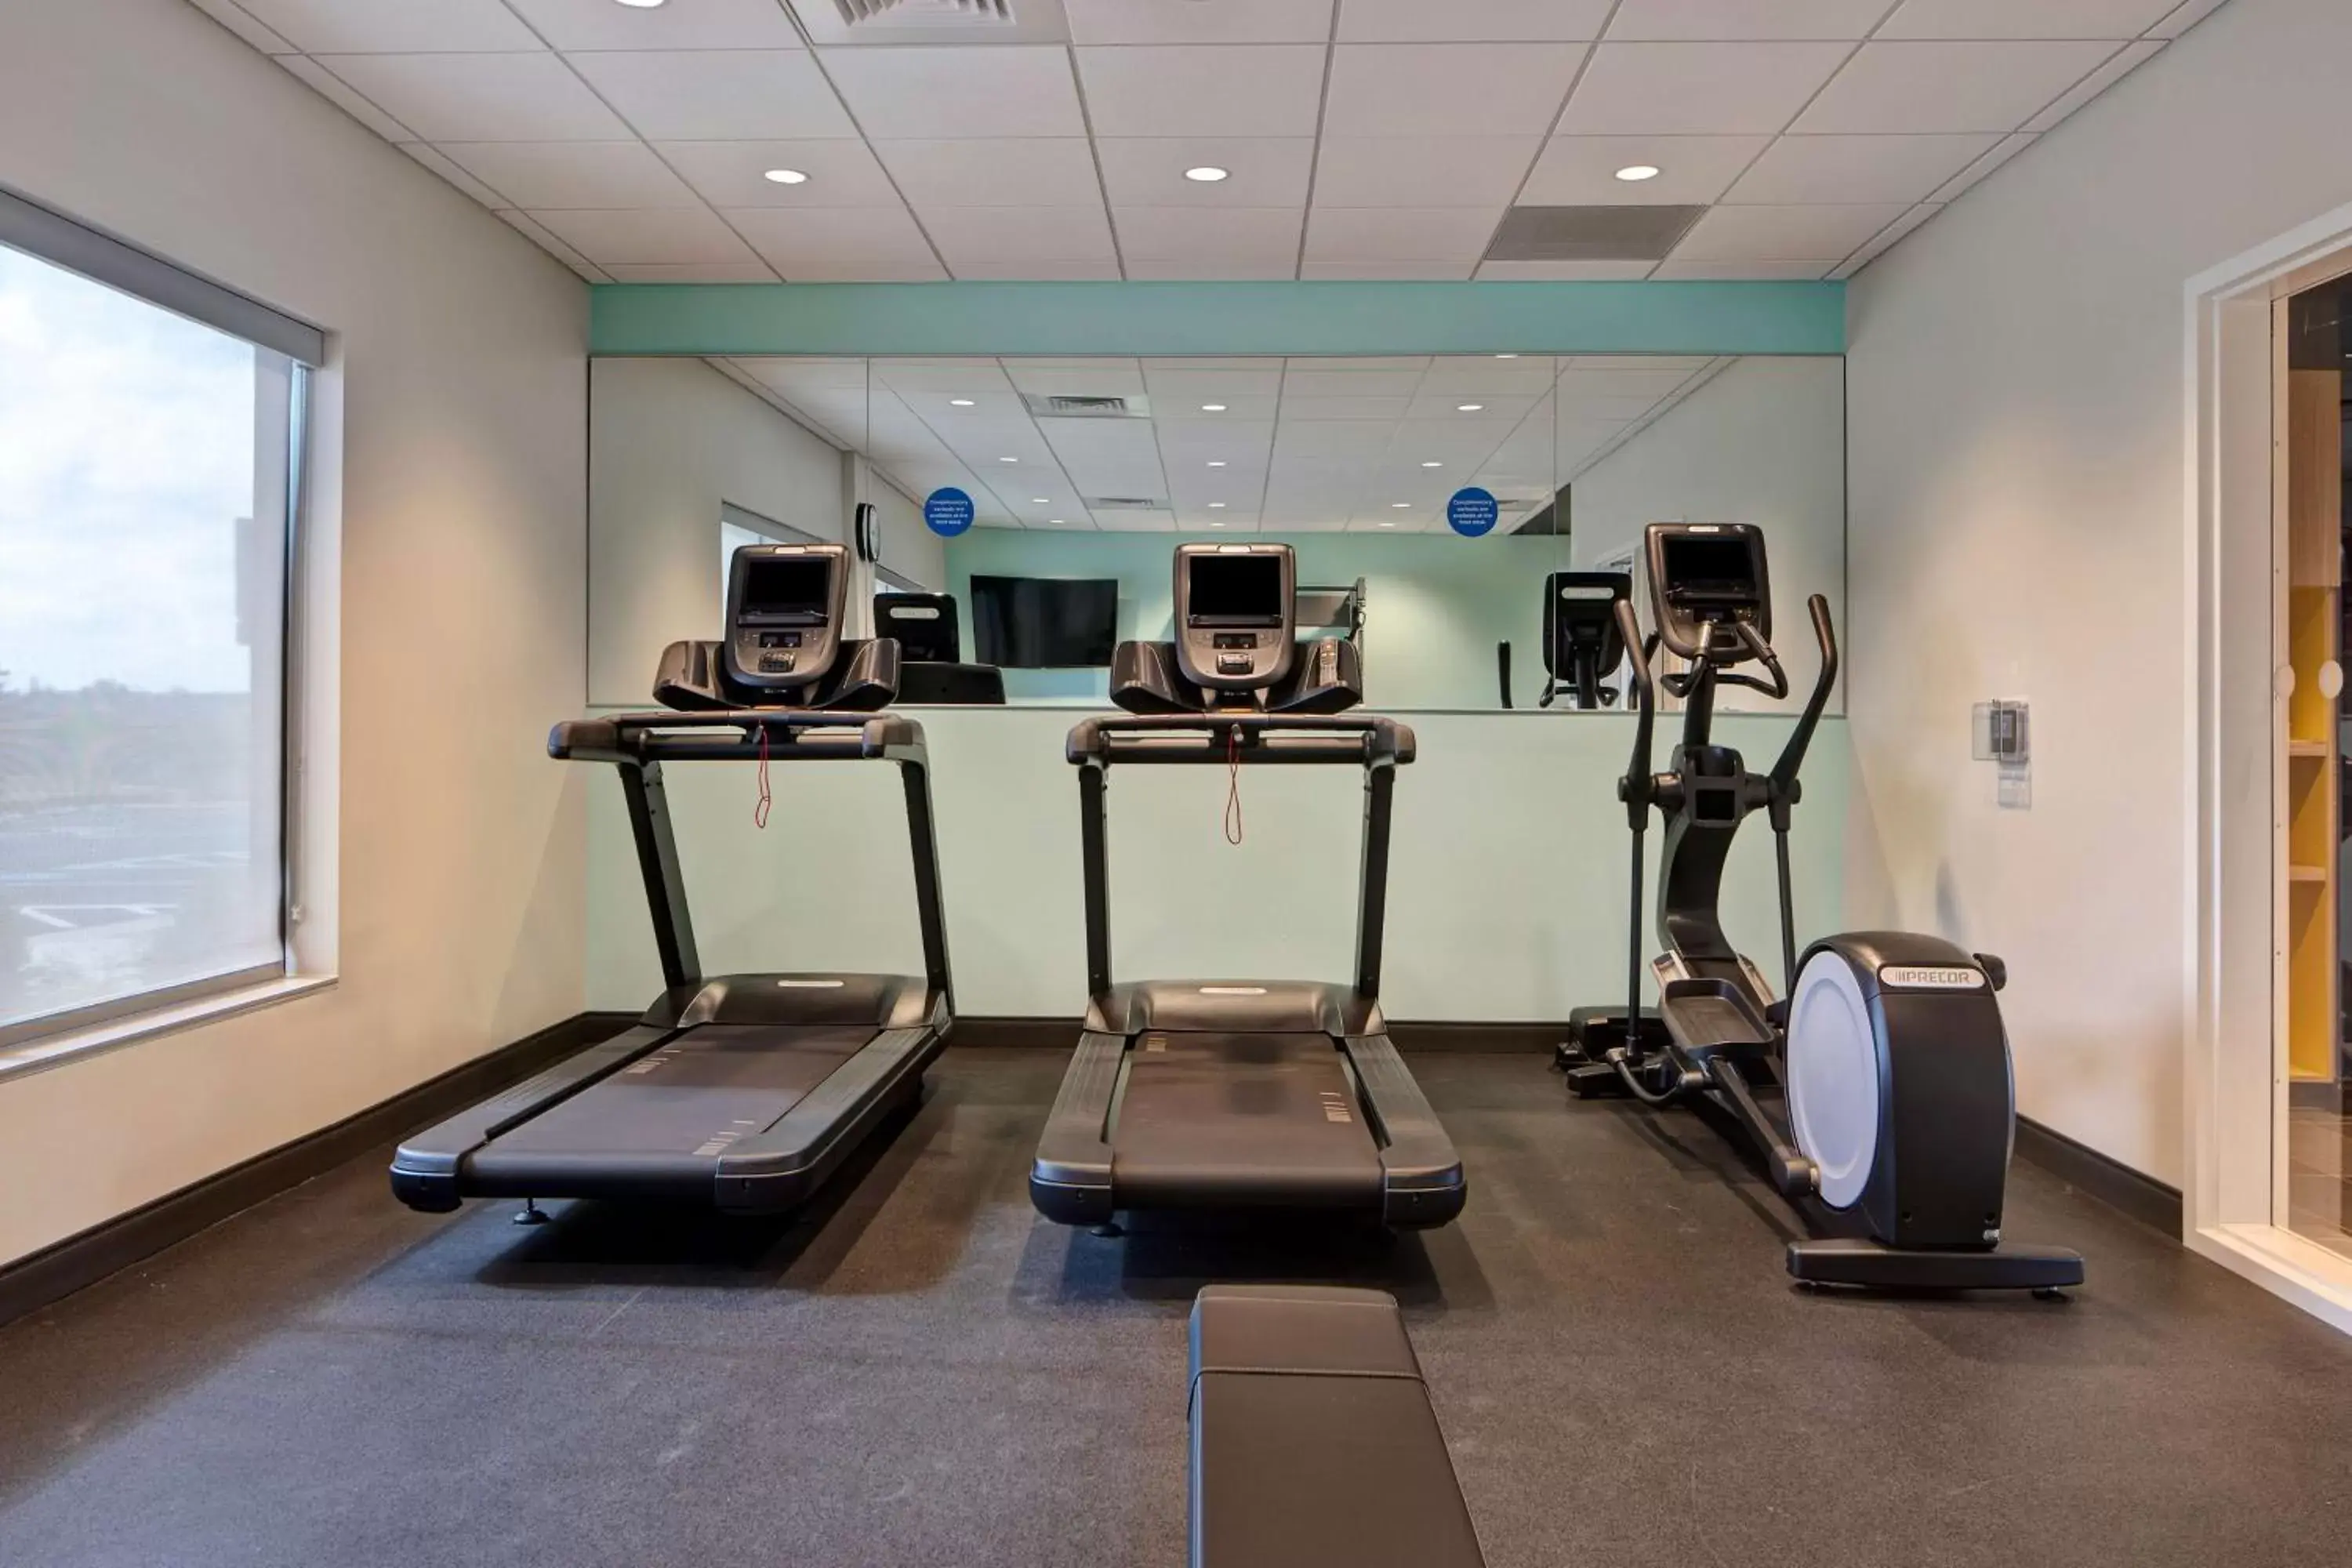 Fitness centre/facilities, Fitness Center/Facilities in Tru By Hilton Manassas, Va